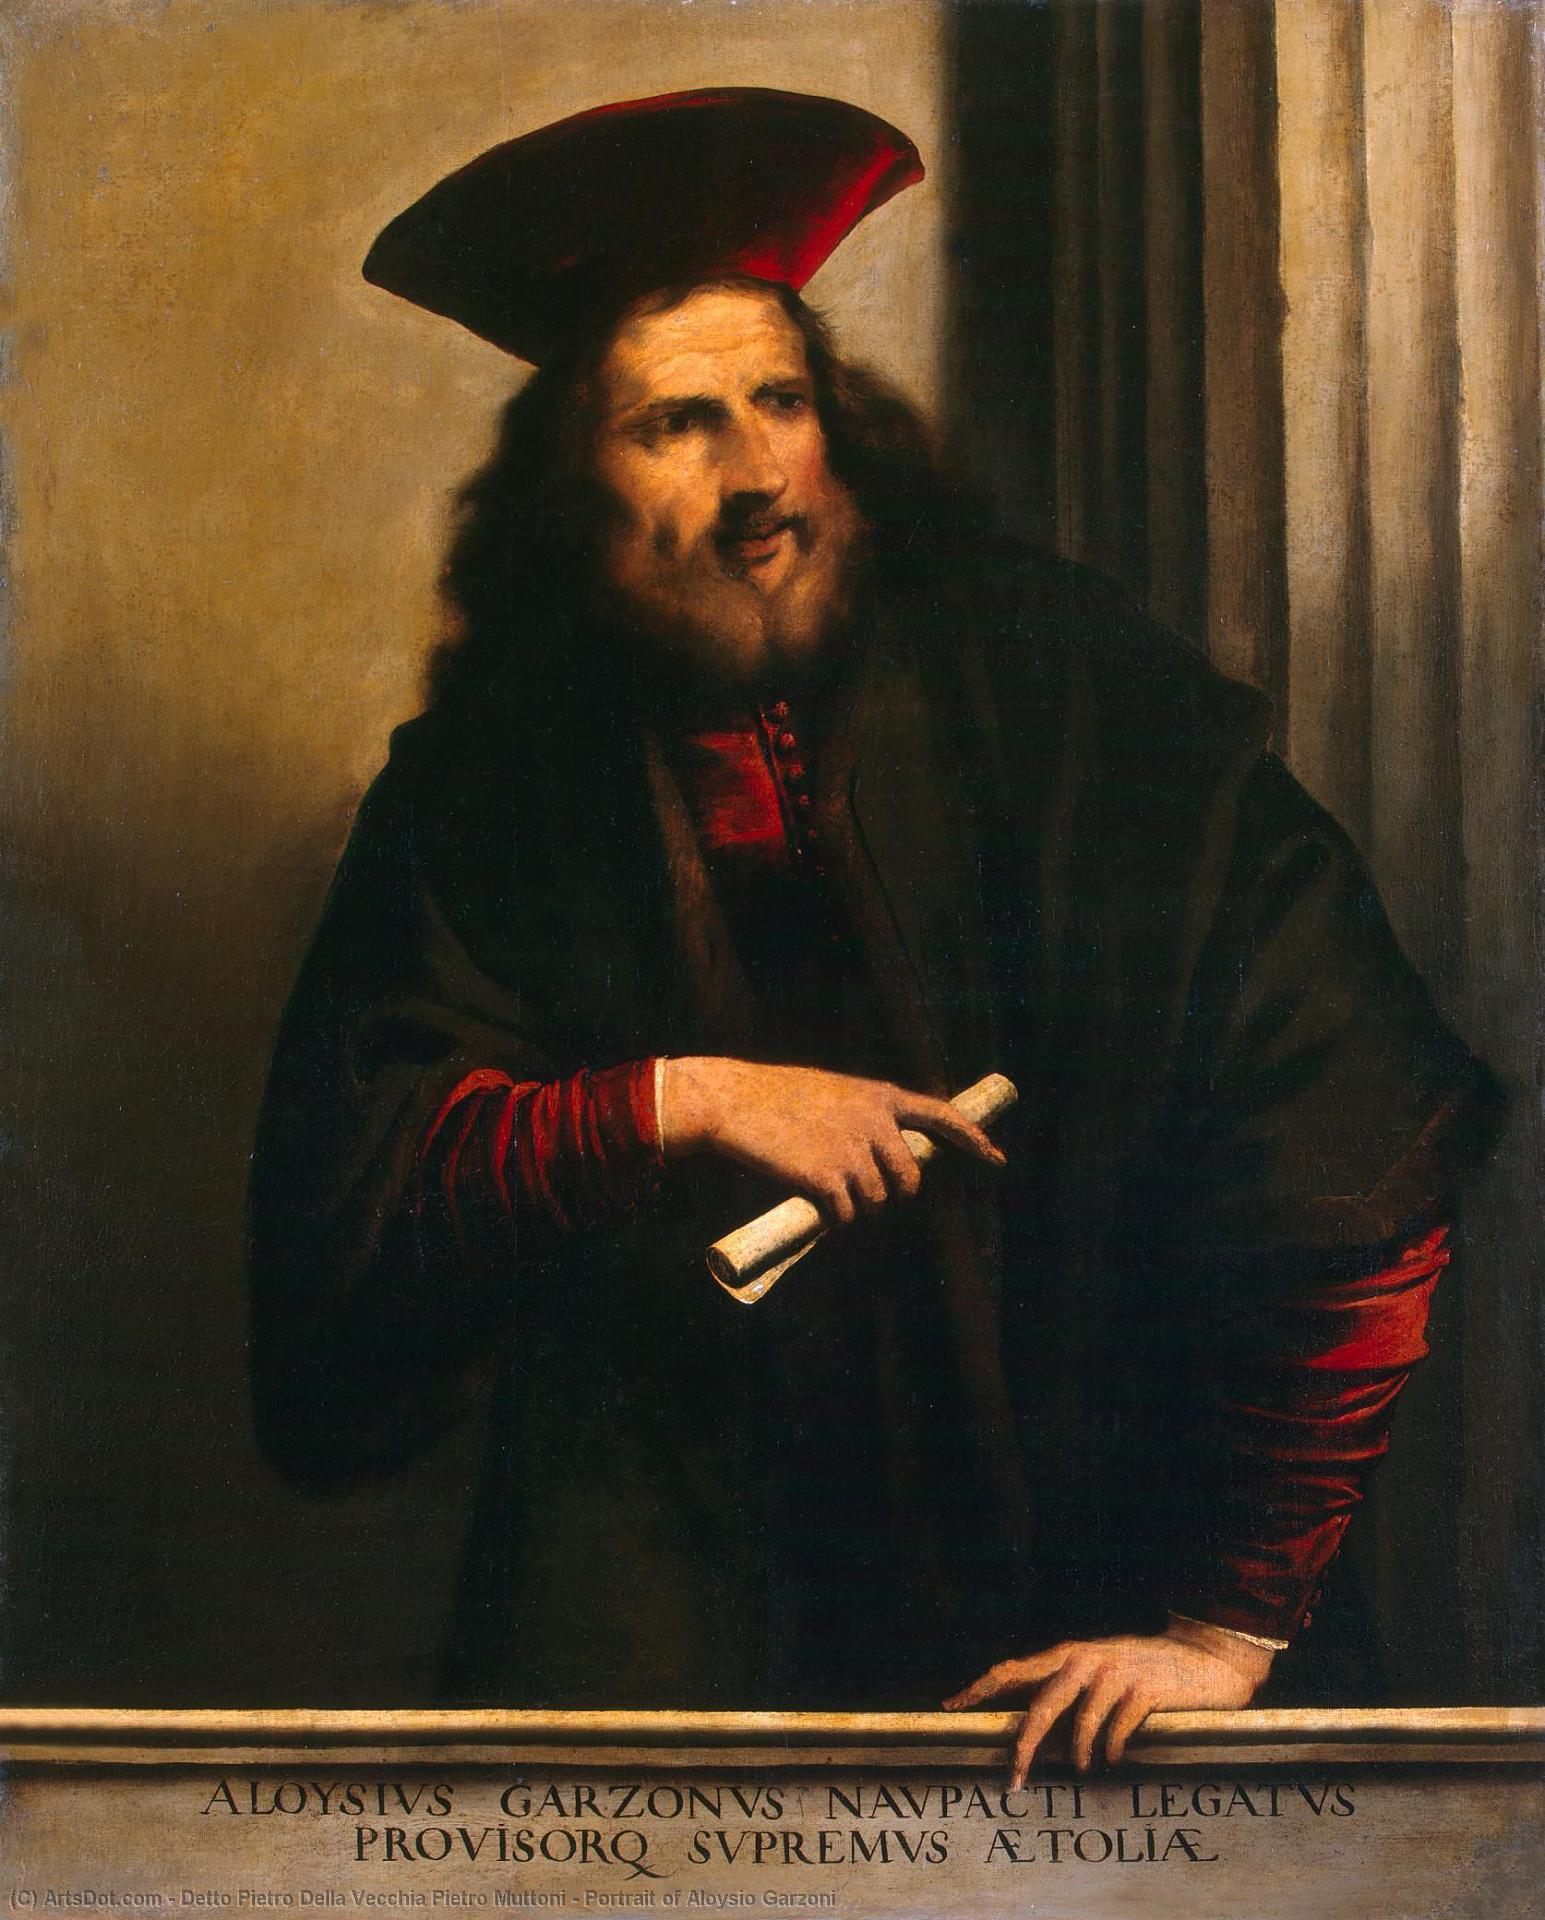 WikiOO.org - 백과 사전 - 회화, 삽화 Detto Pietro Della Vecchia Pietro Muttoni - Portrait of Aloysio Garzoni